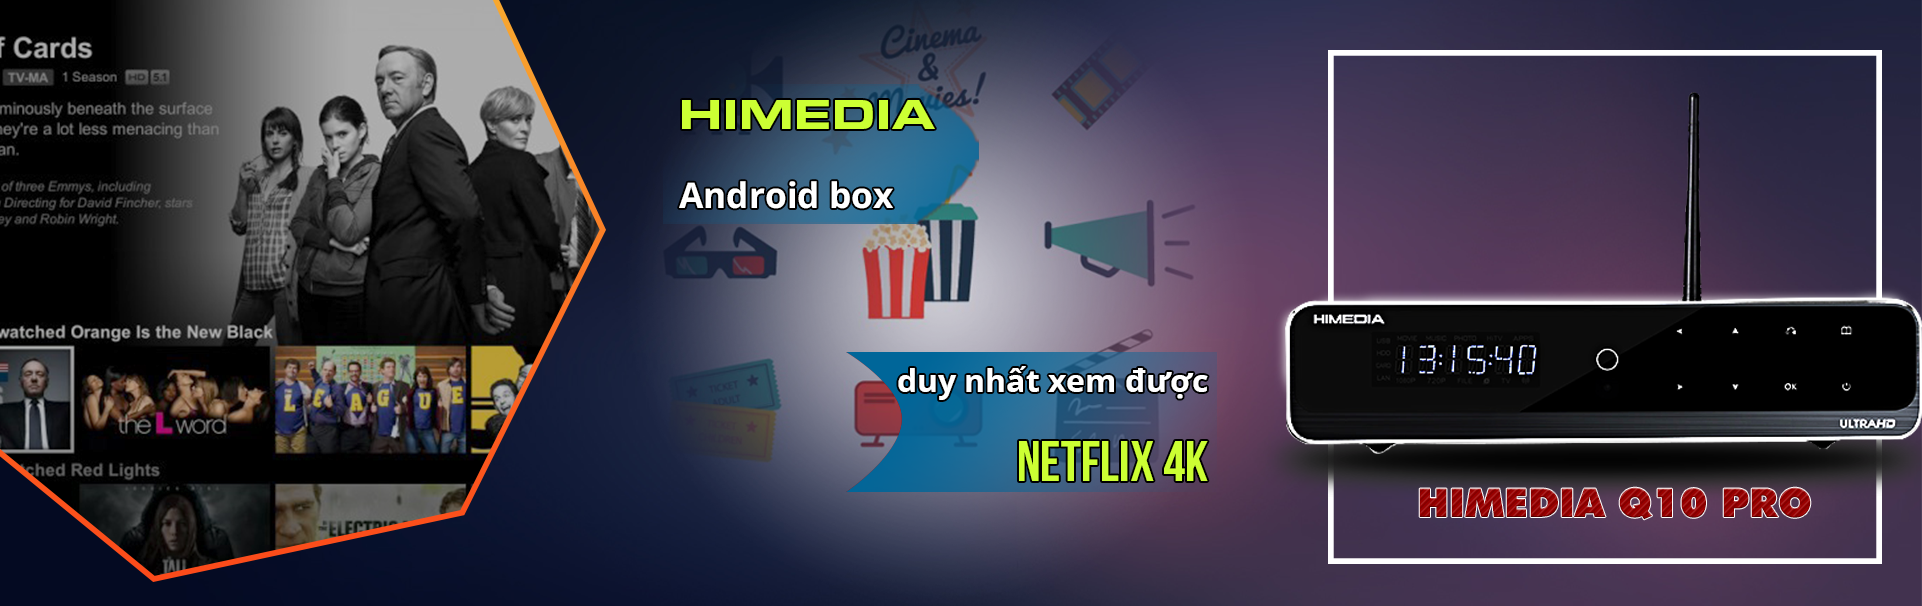 android box xem netflix 4k